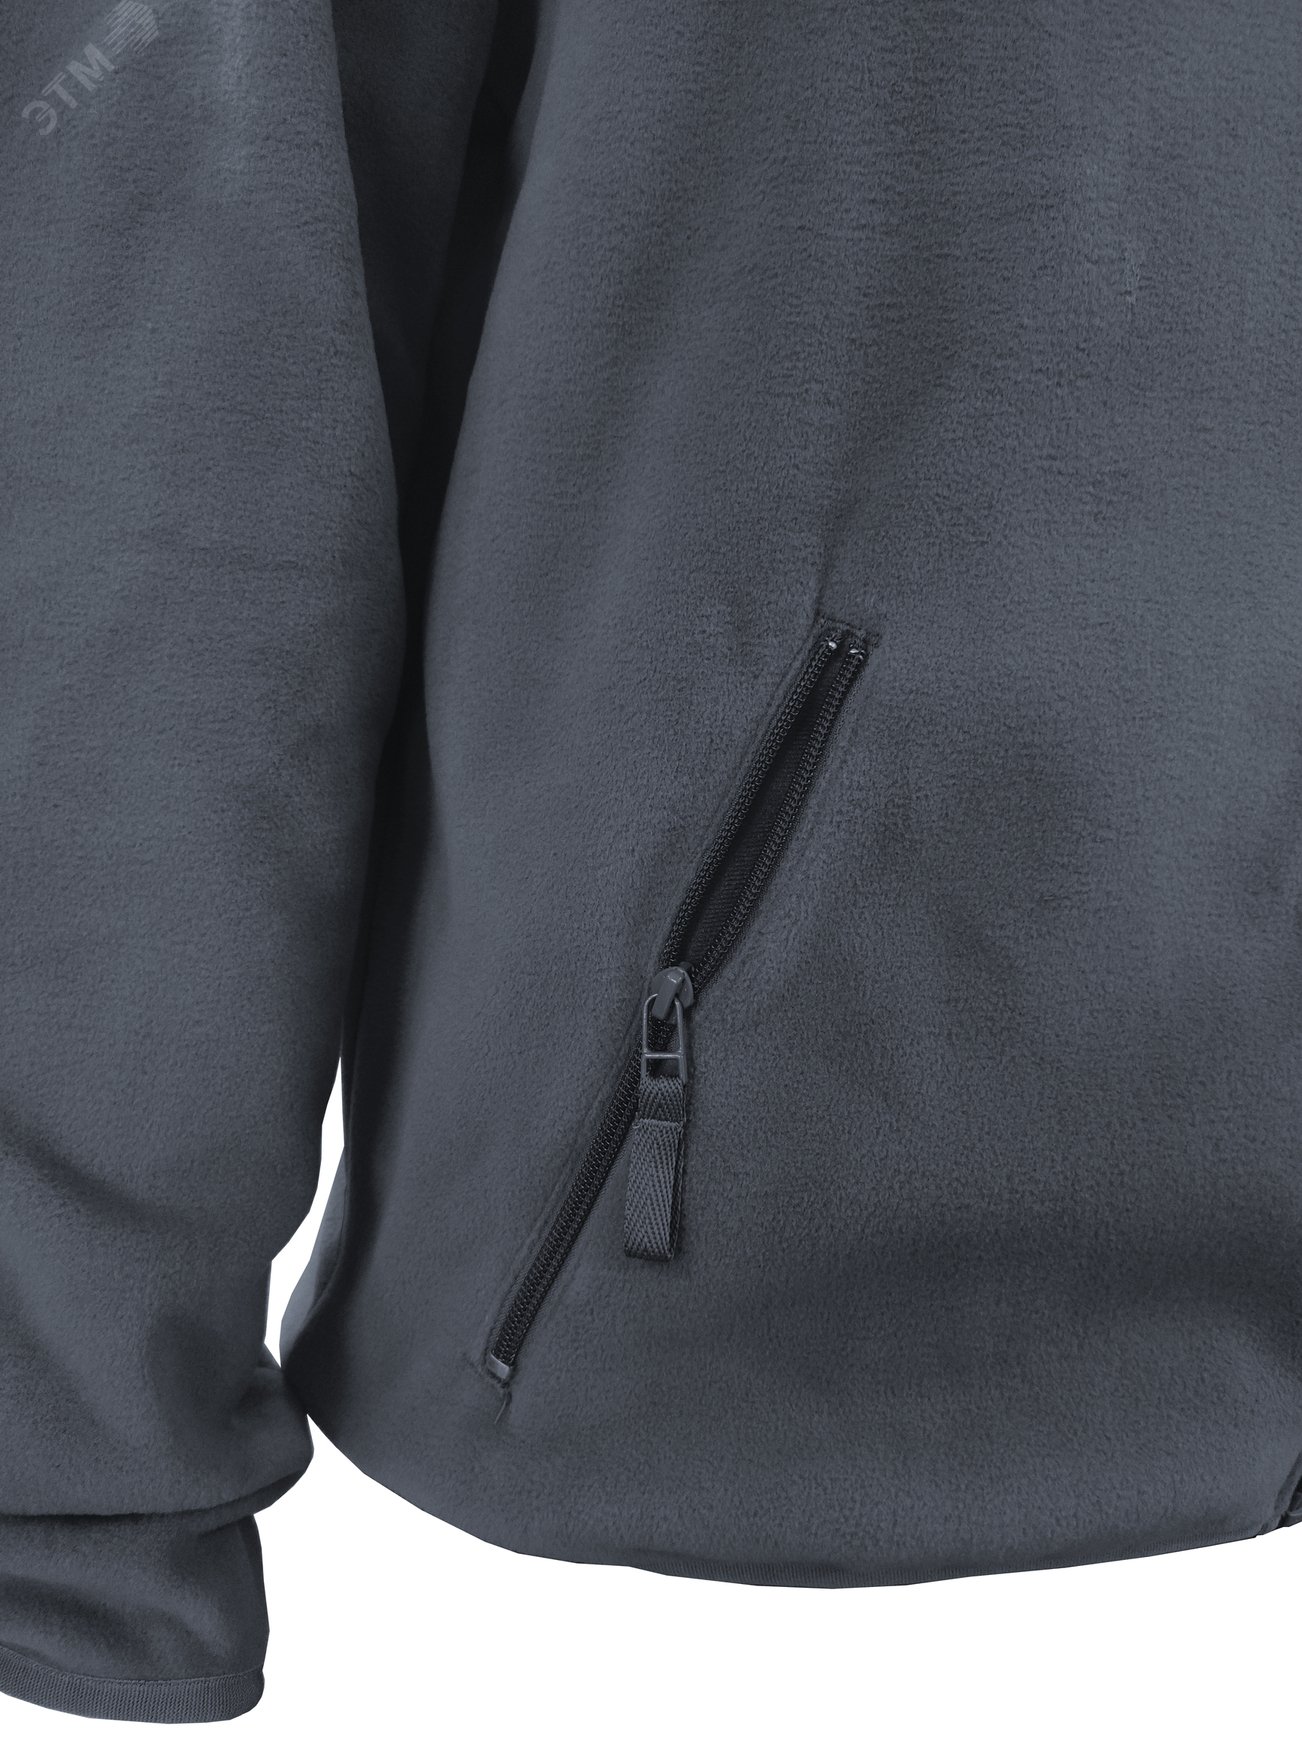 Куртка флисовая арт. JF-01 на молнии цв. серый 52-54 р. L 142302 Эталон-Спецодежда - превью 8